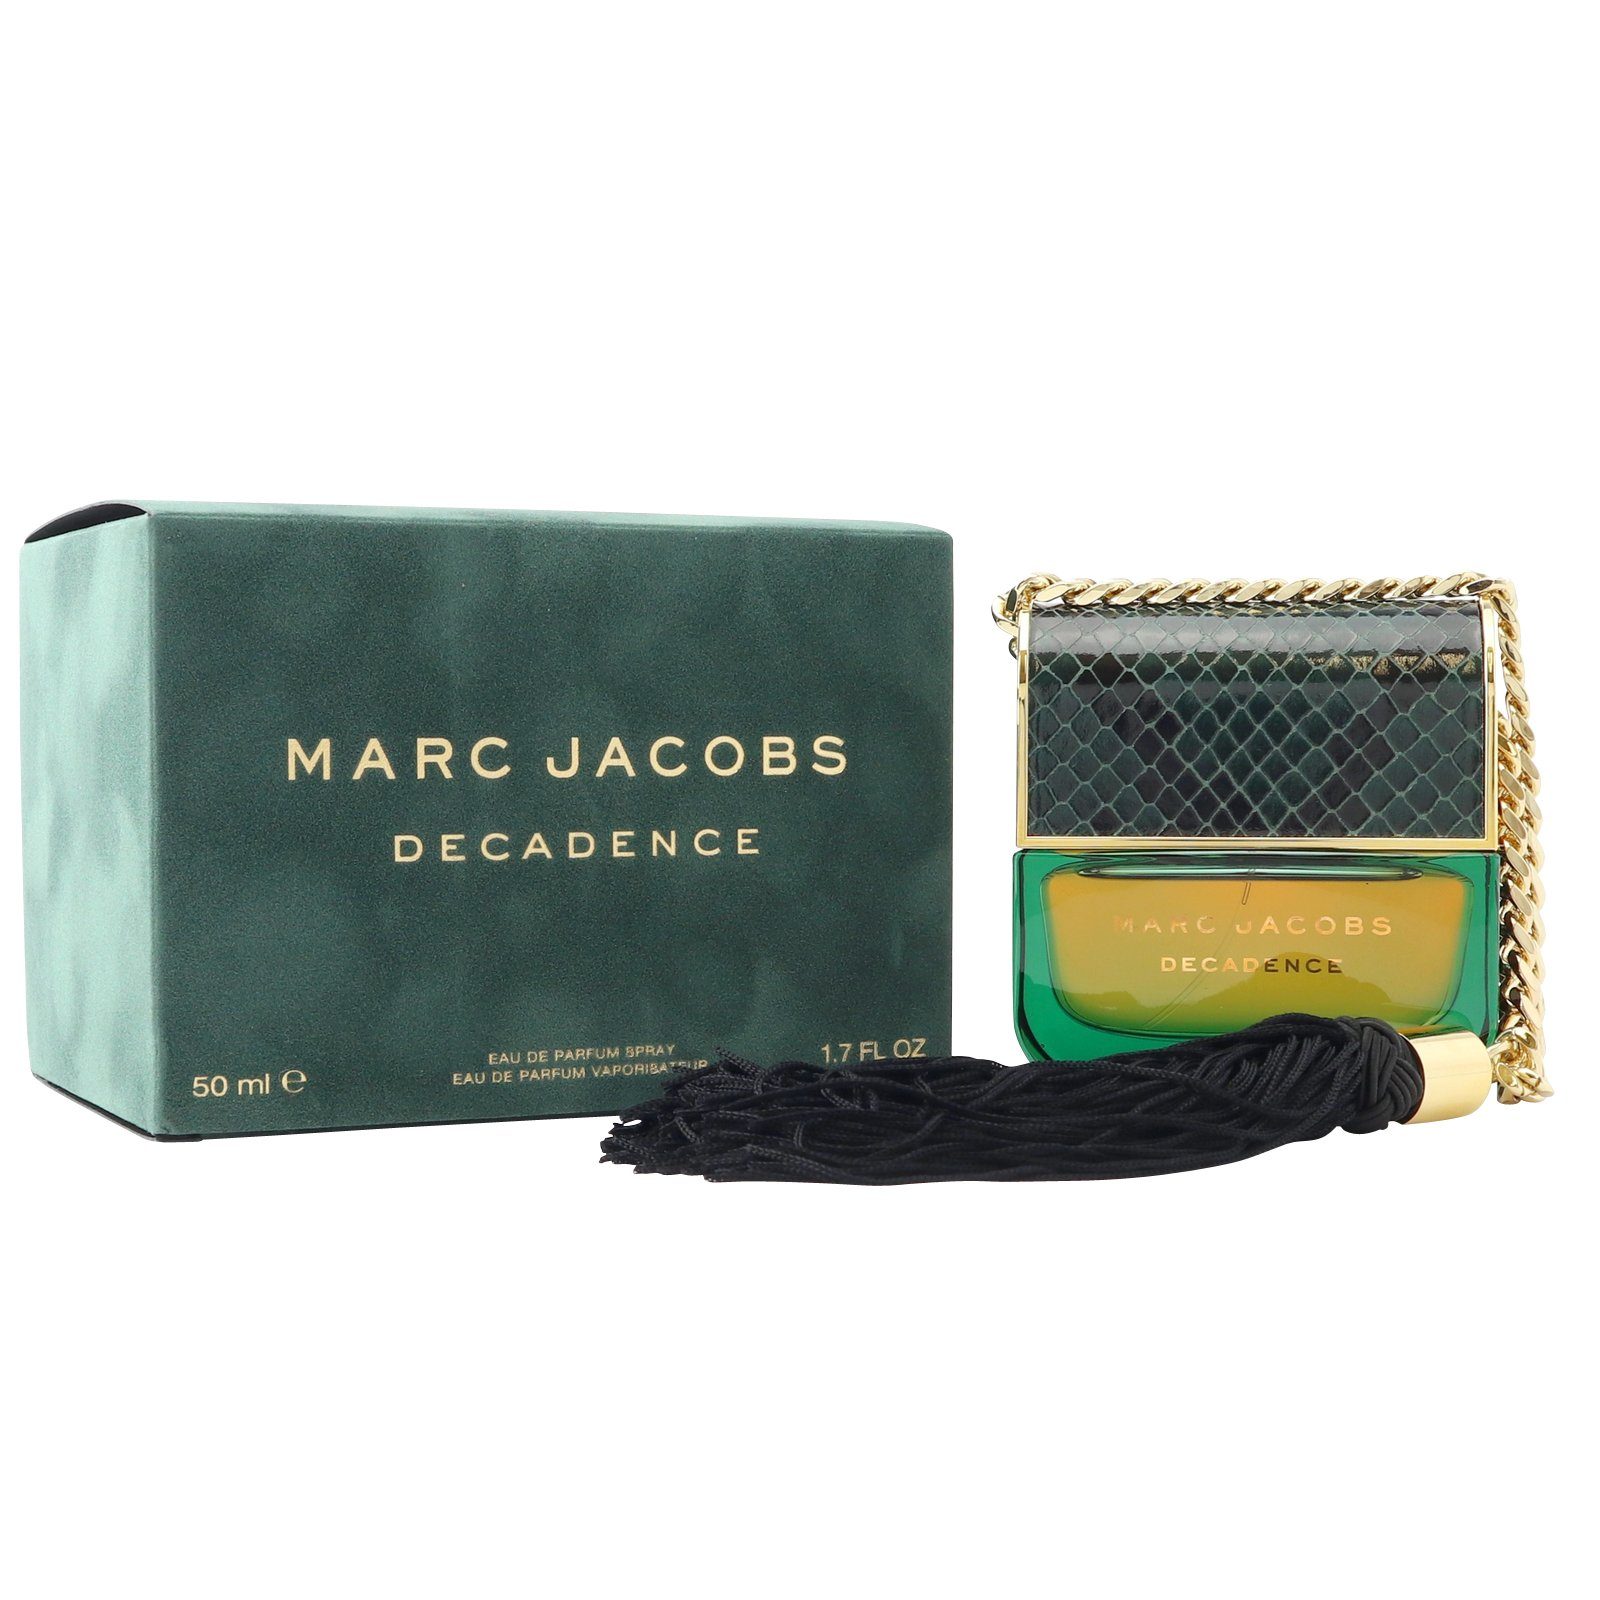 MARC JACOBS Eau de Parfum Marc Jacobs Decadence Eau de Parfum Spray 50 ml